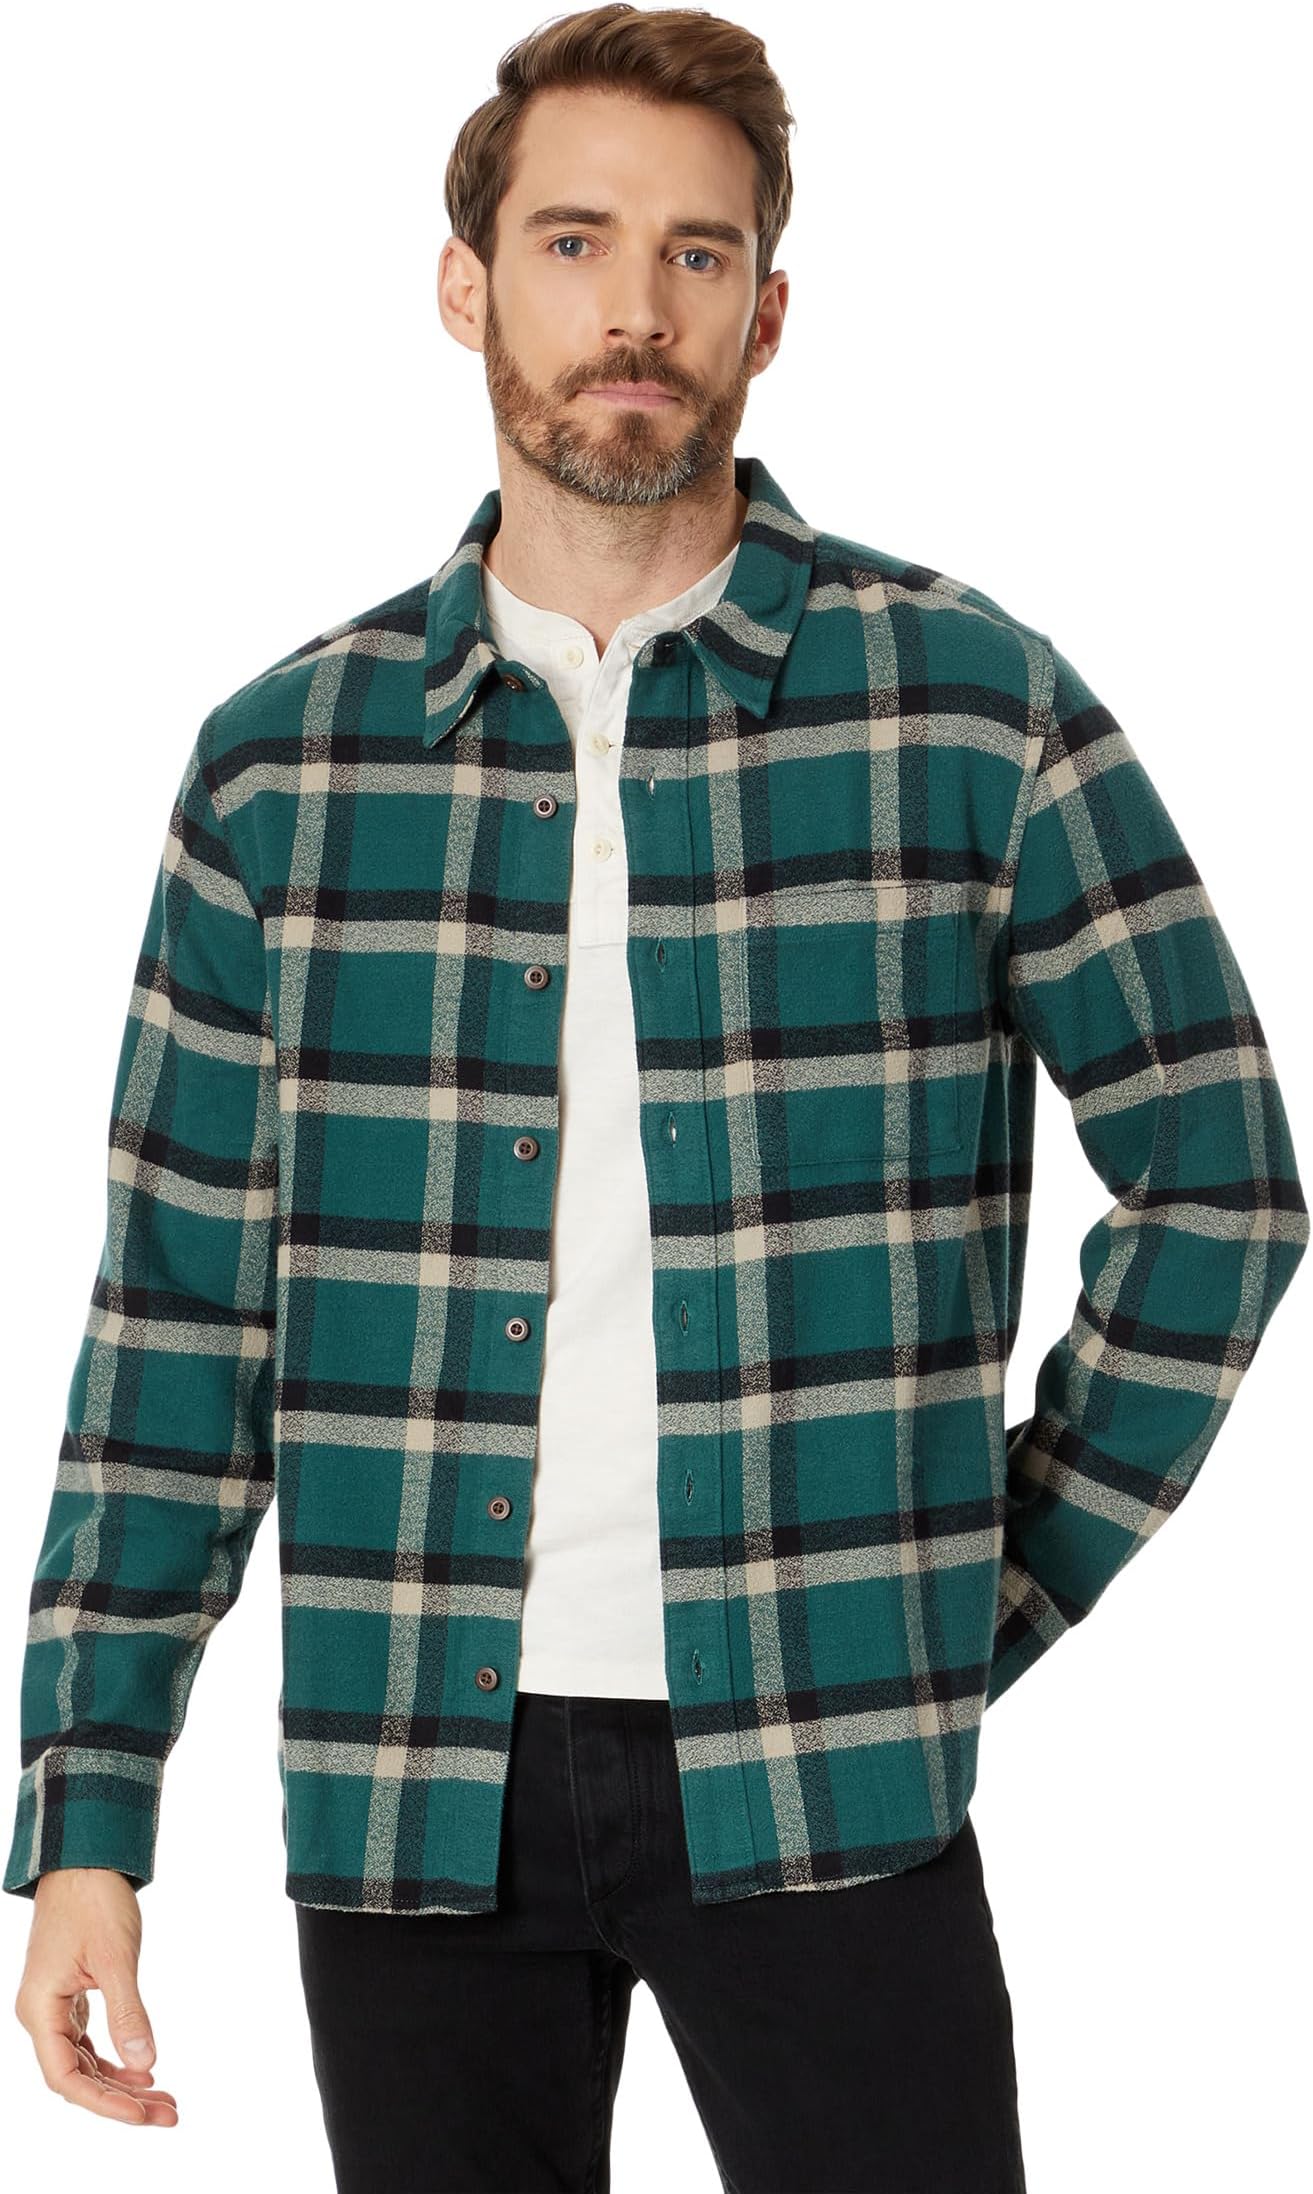 Куртка Heathered Easy Long-Sleeve Shirt in Plaid Madewell, цвет Midnight Green